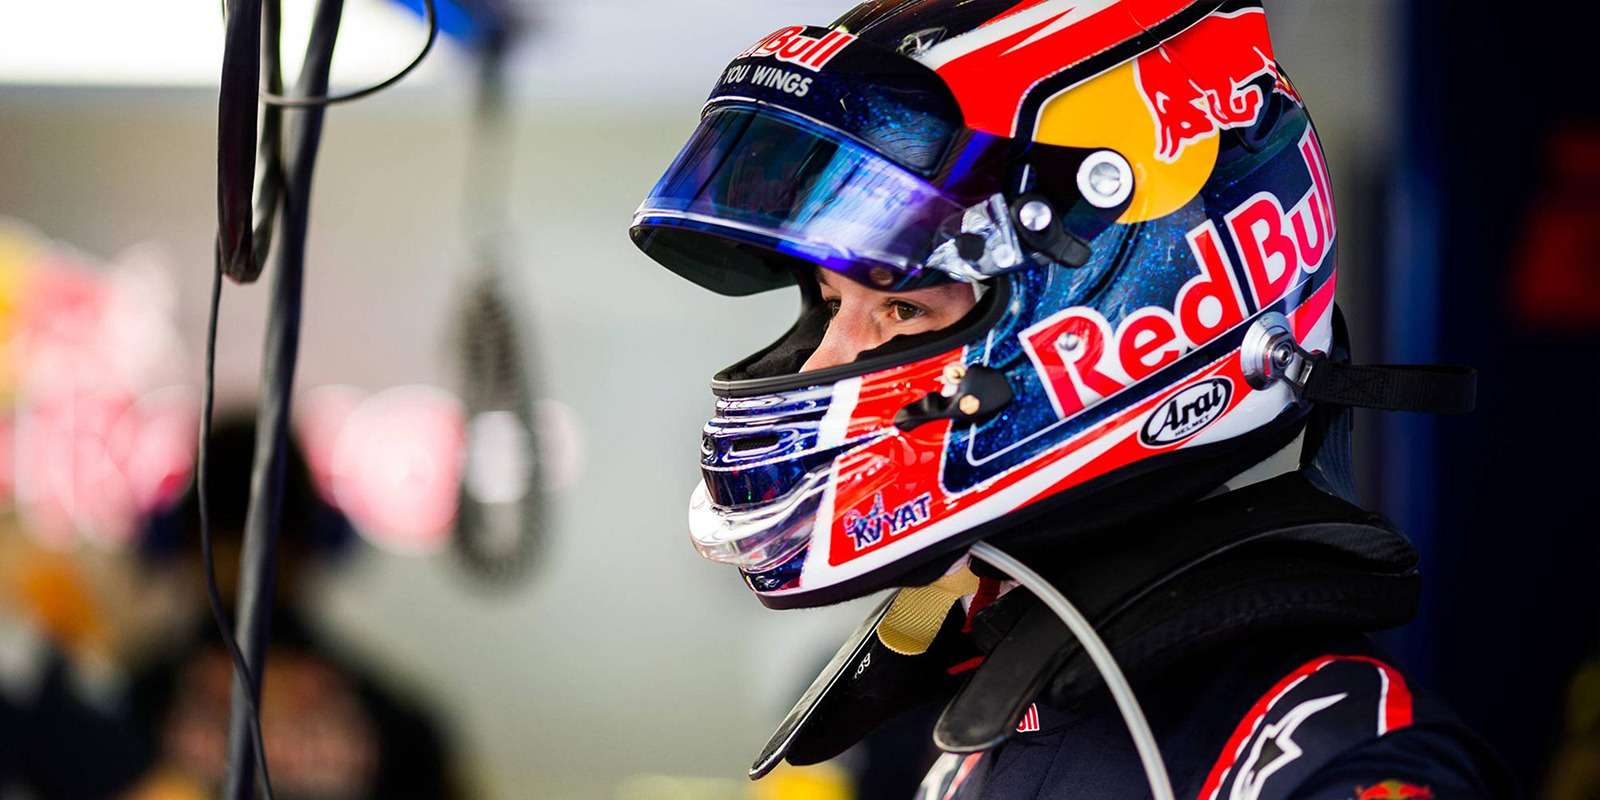 Даниил Квят возвращается в гонки Формулы-1. Теперь российских пилотов будет двое!